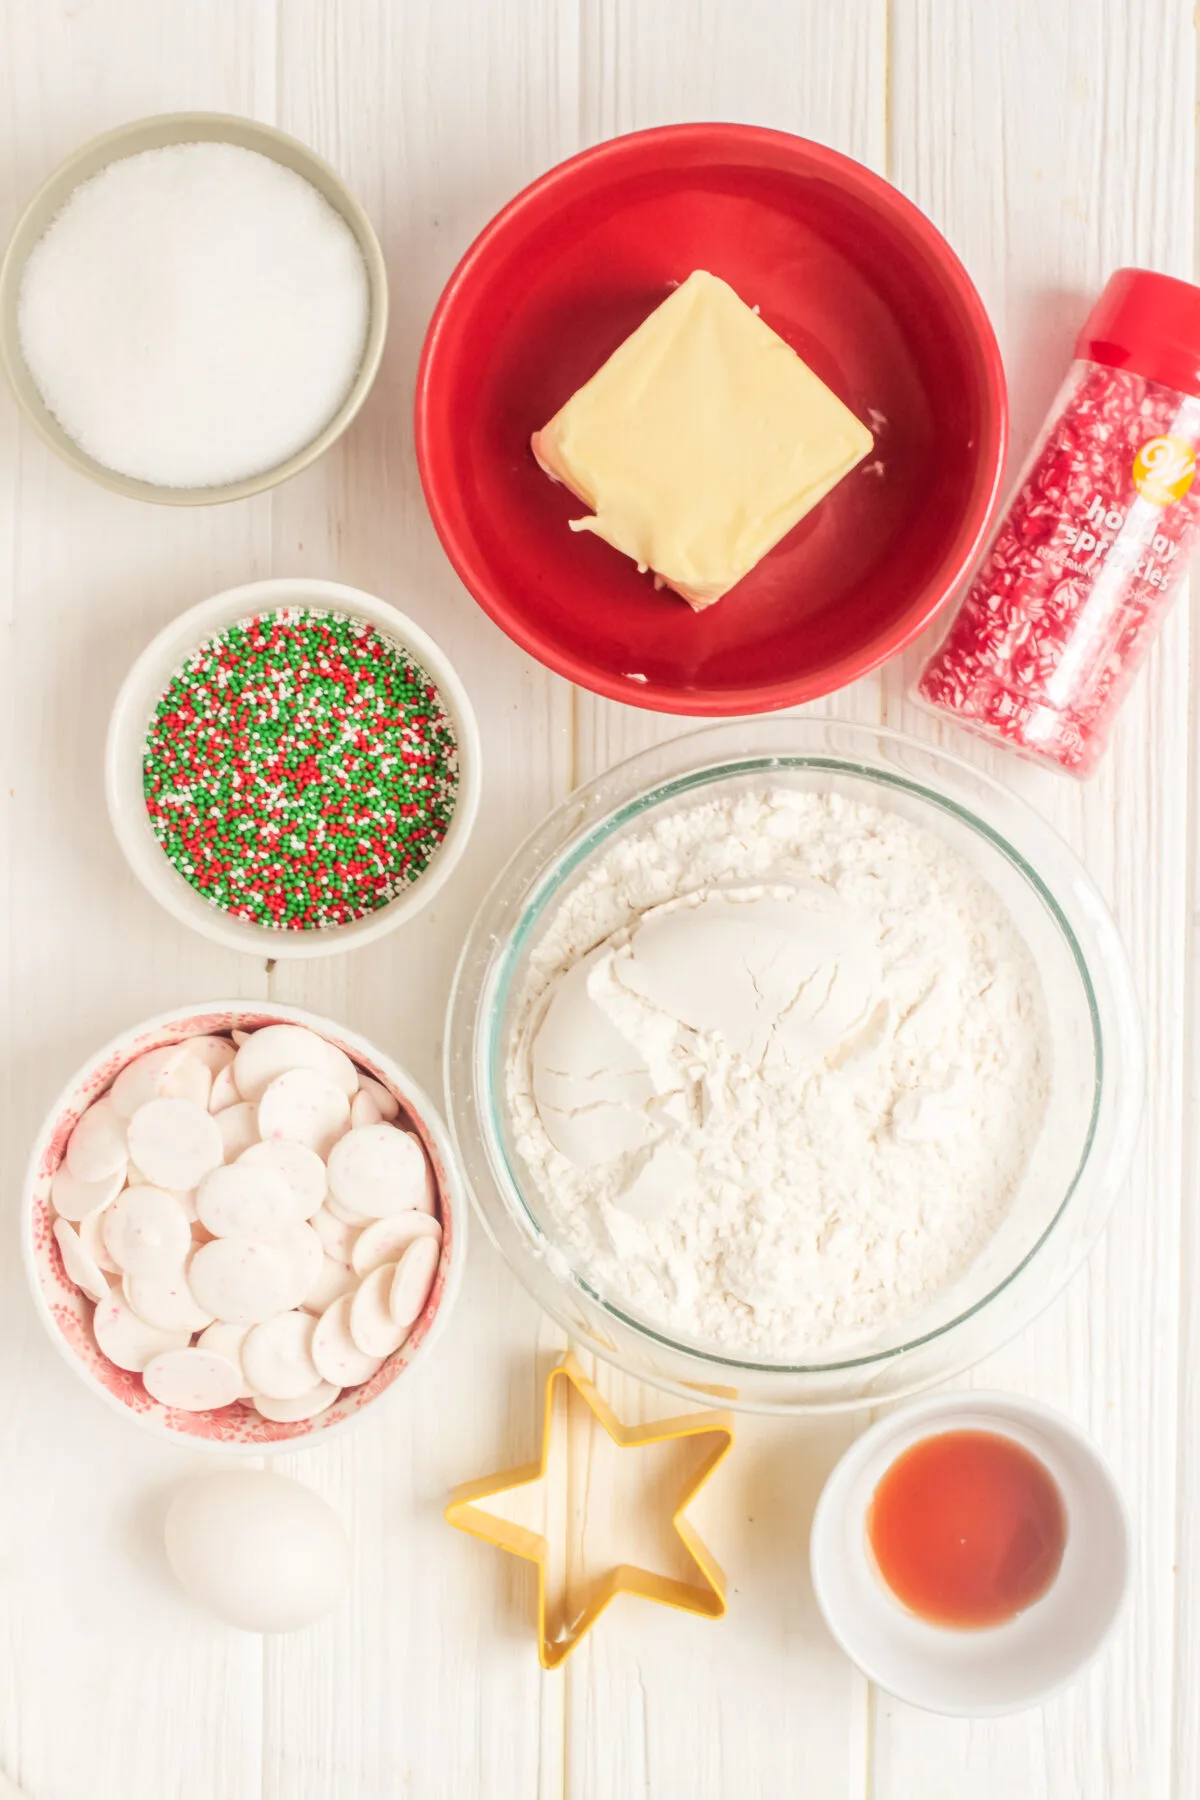 Ingredients for the sprinkle sugar cookies